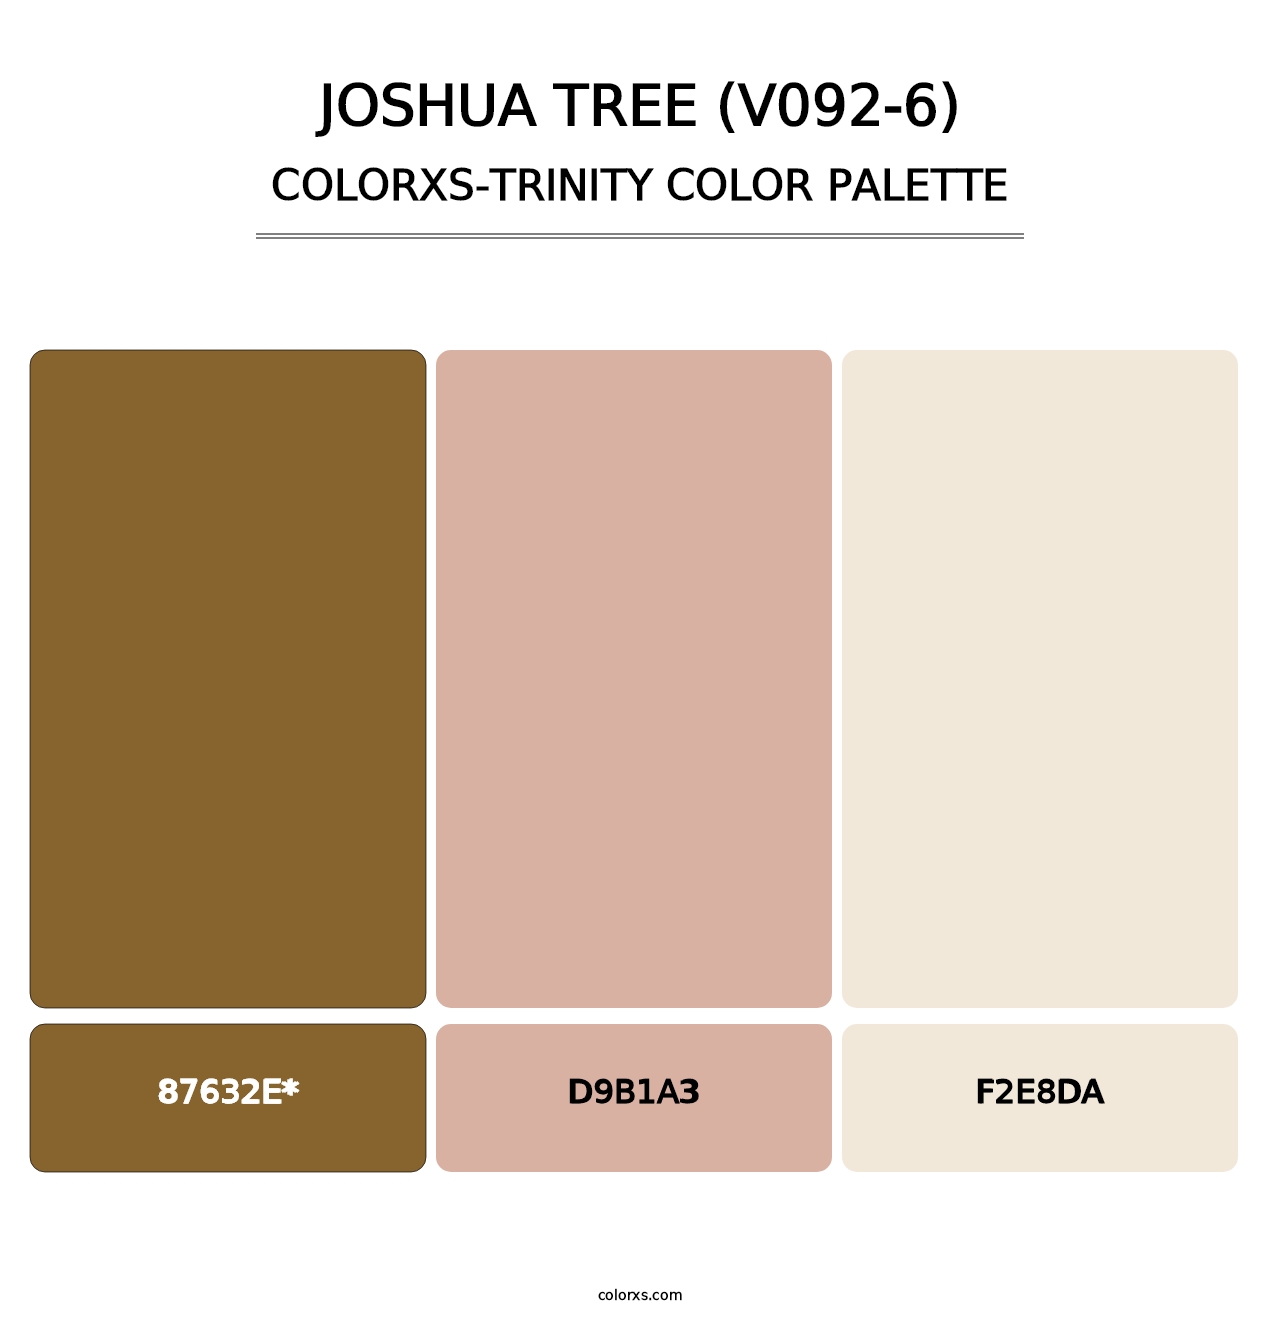 Joshua Tree (V092-6) - Colorxs Trinity Palette